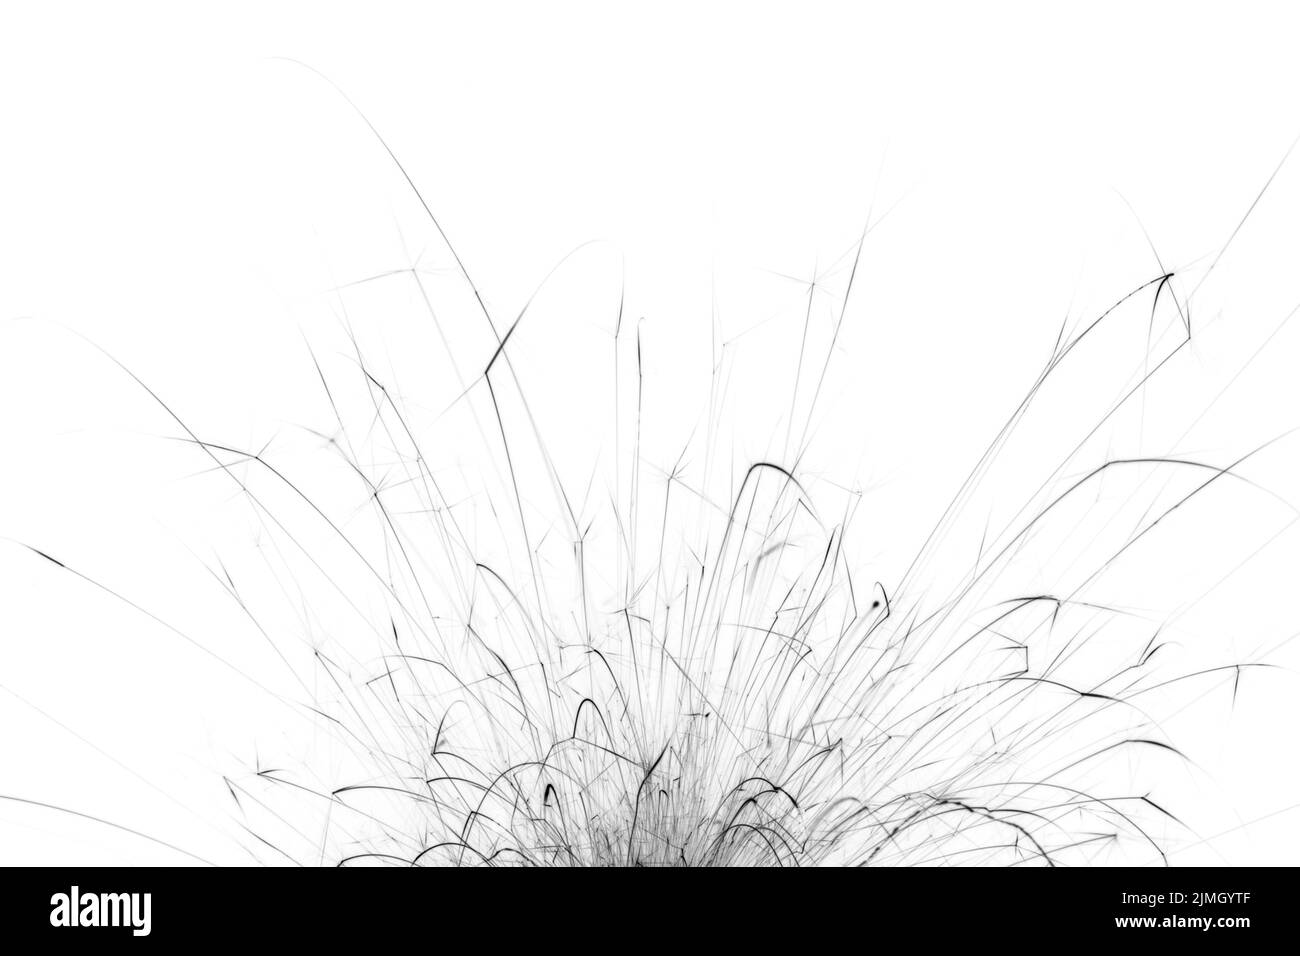 Linee nere su sfondo bianco. Foto monocromatica astratta delle scintille dei fuochi d'artificio. Foto Stock